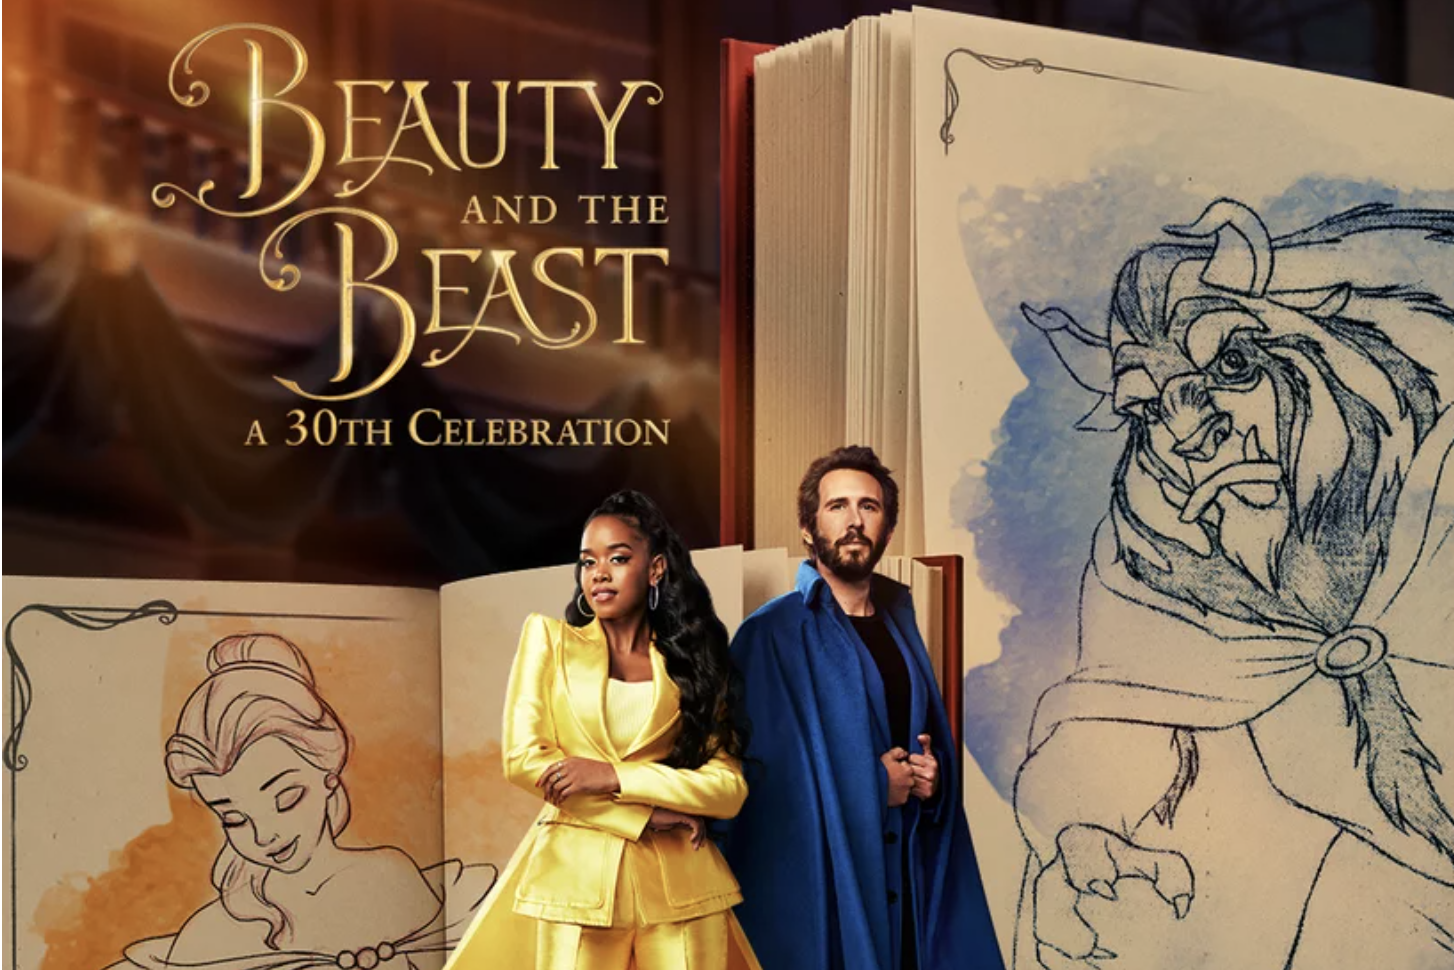 Belle Beauty & the Beast Fan Art Illustration : r/disney